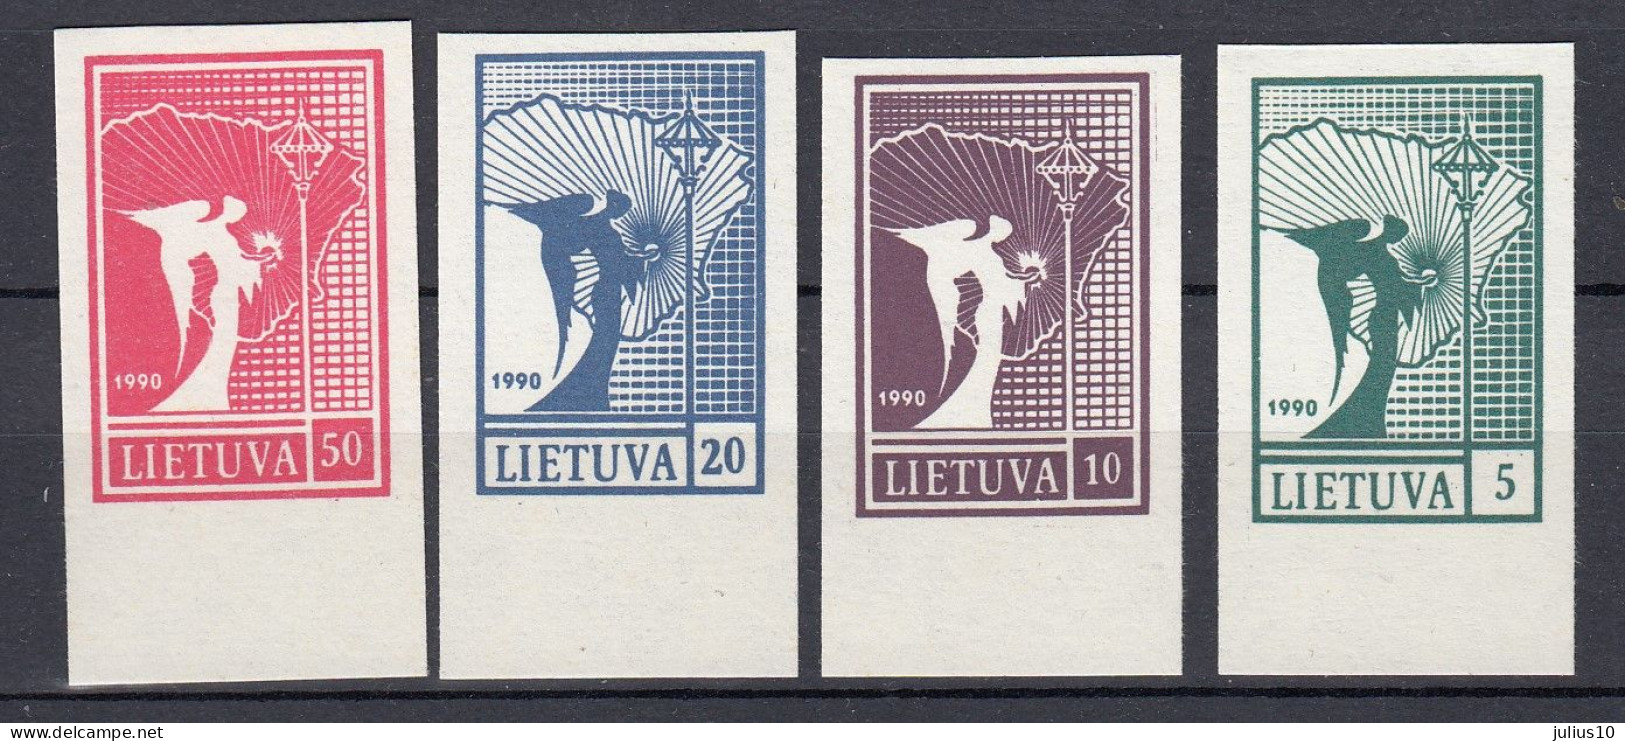 LITHUANIA 1990 First Stamps MNH(**) Mi 457-460 #Lt1162 - Litauen